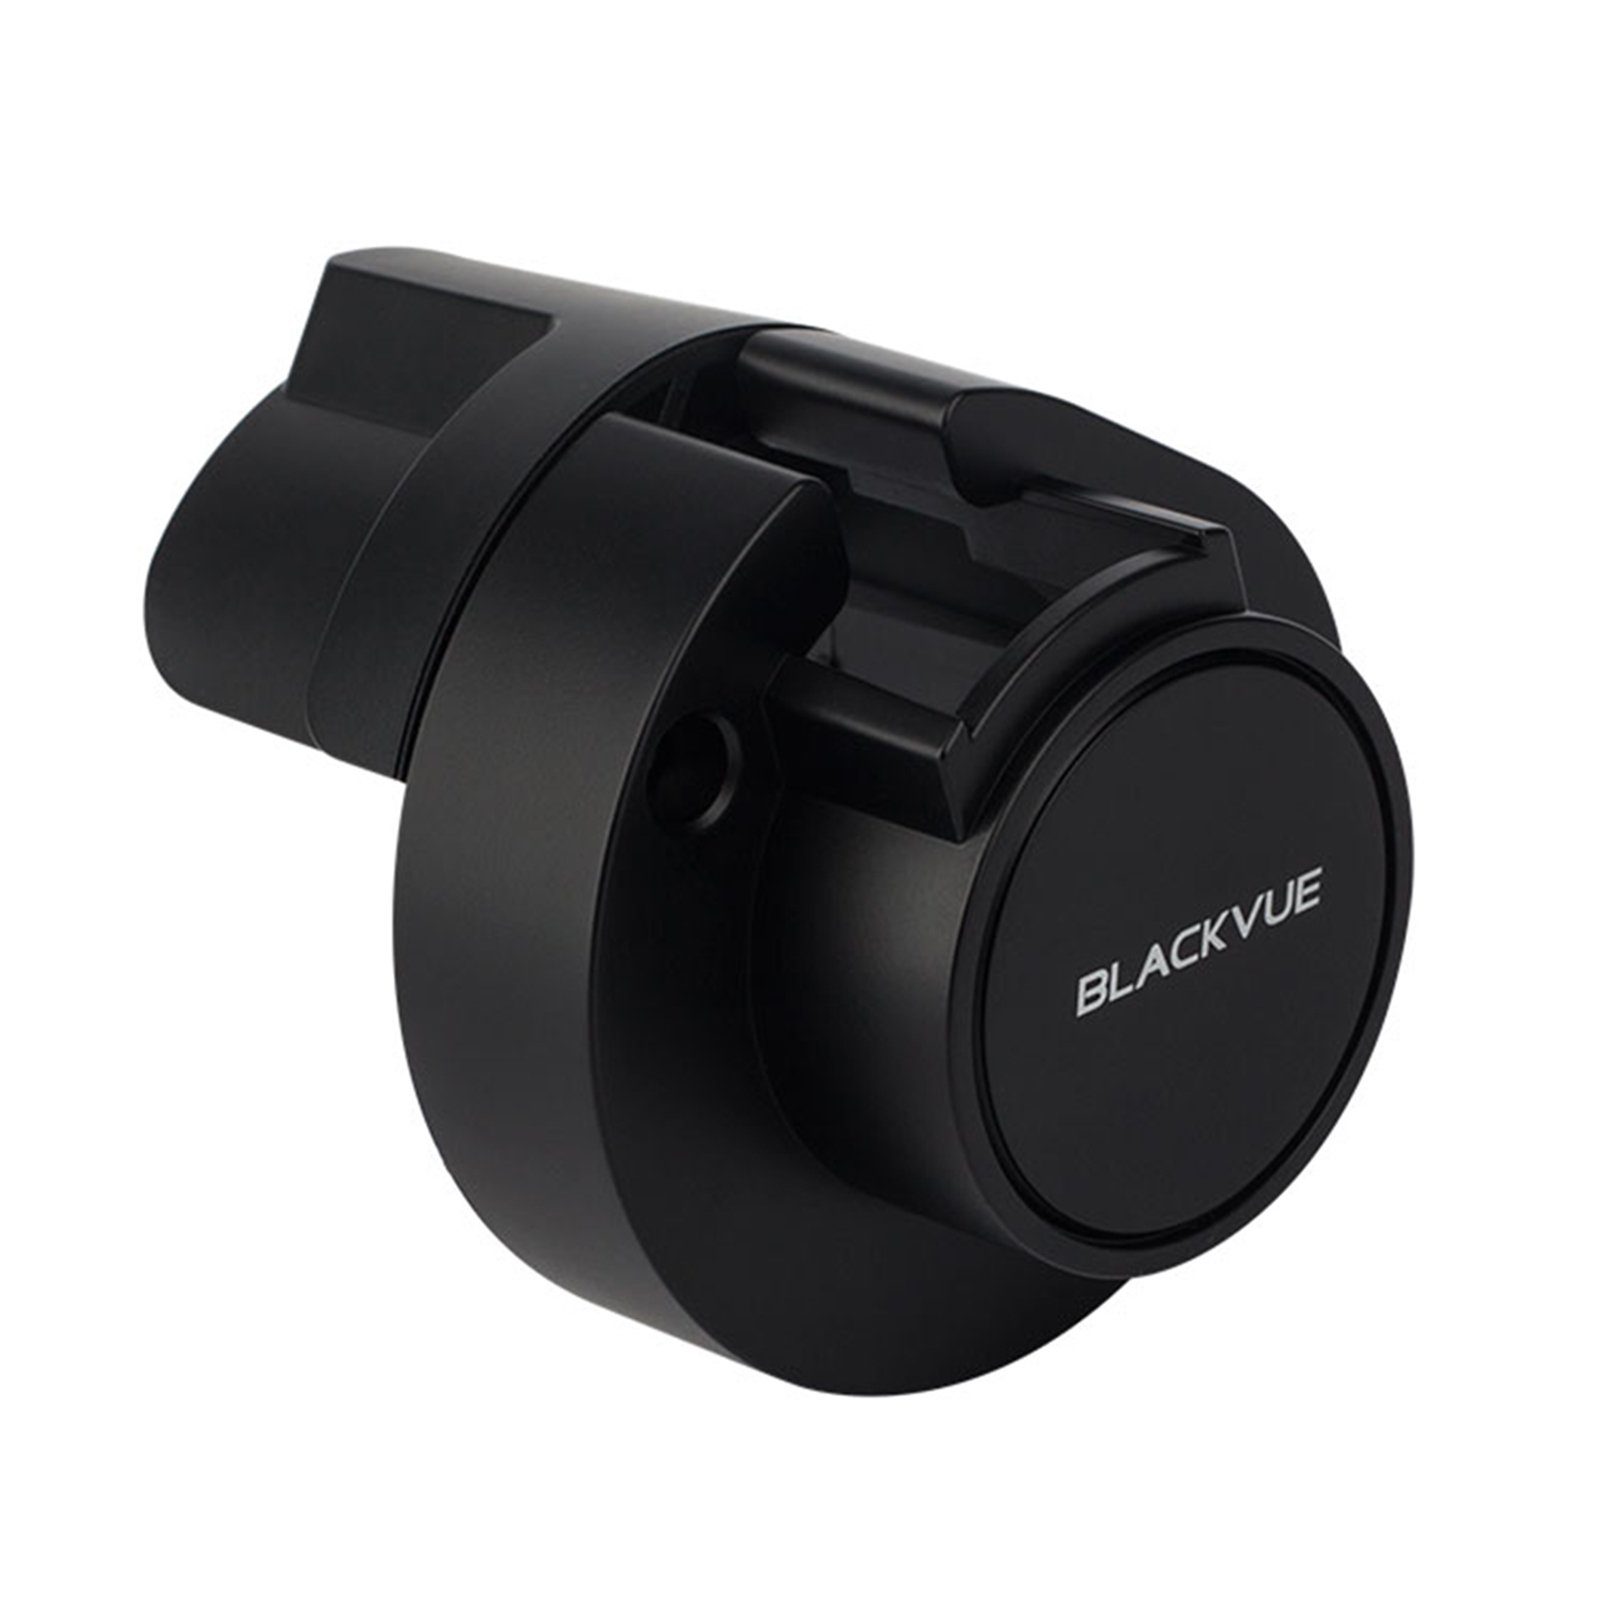 BlackVue BlackVue BTC-1B LKW Dashcam für Dashcam-Schutzabdeckung